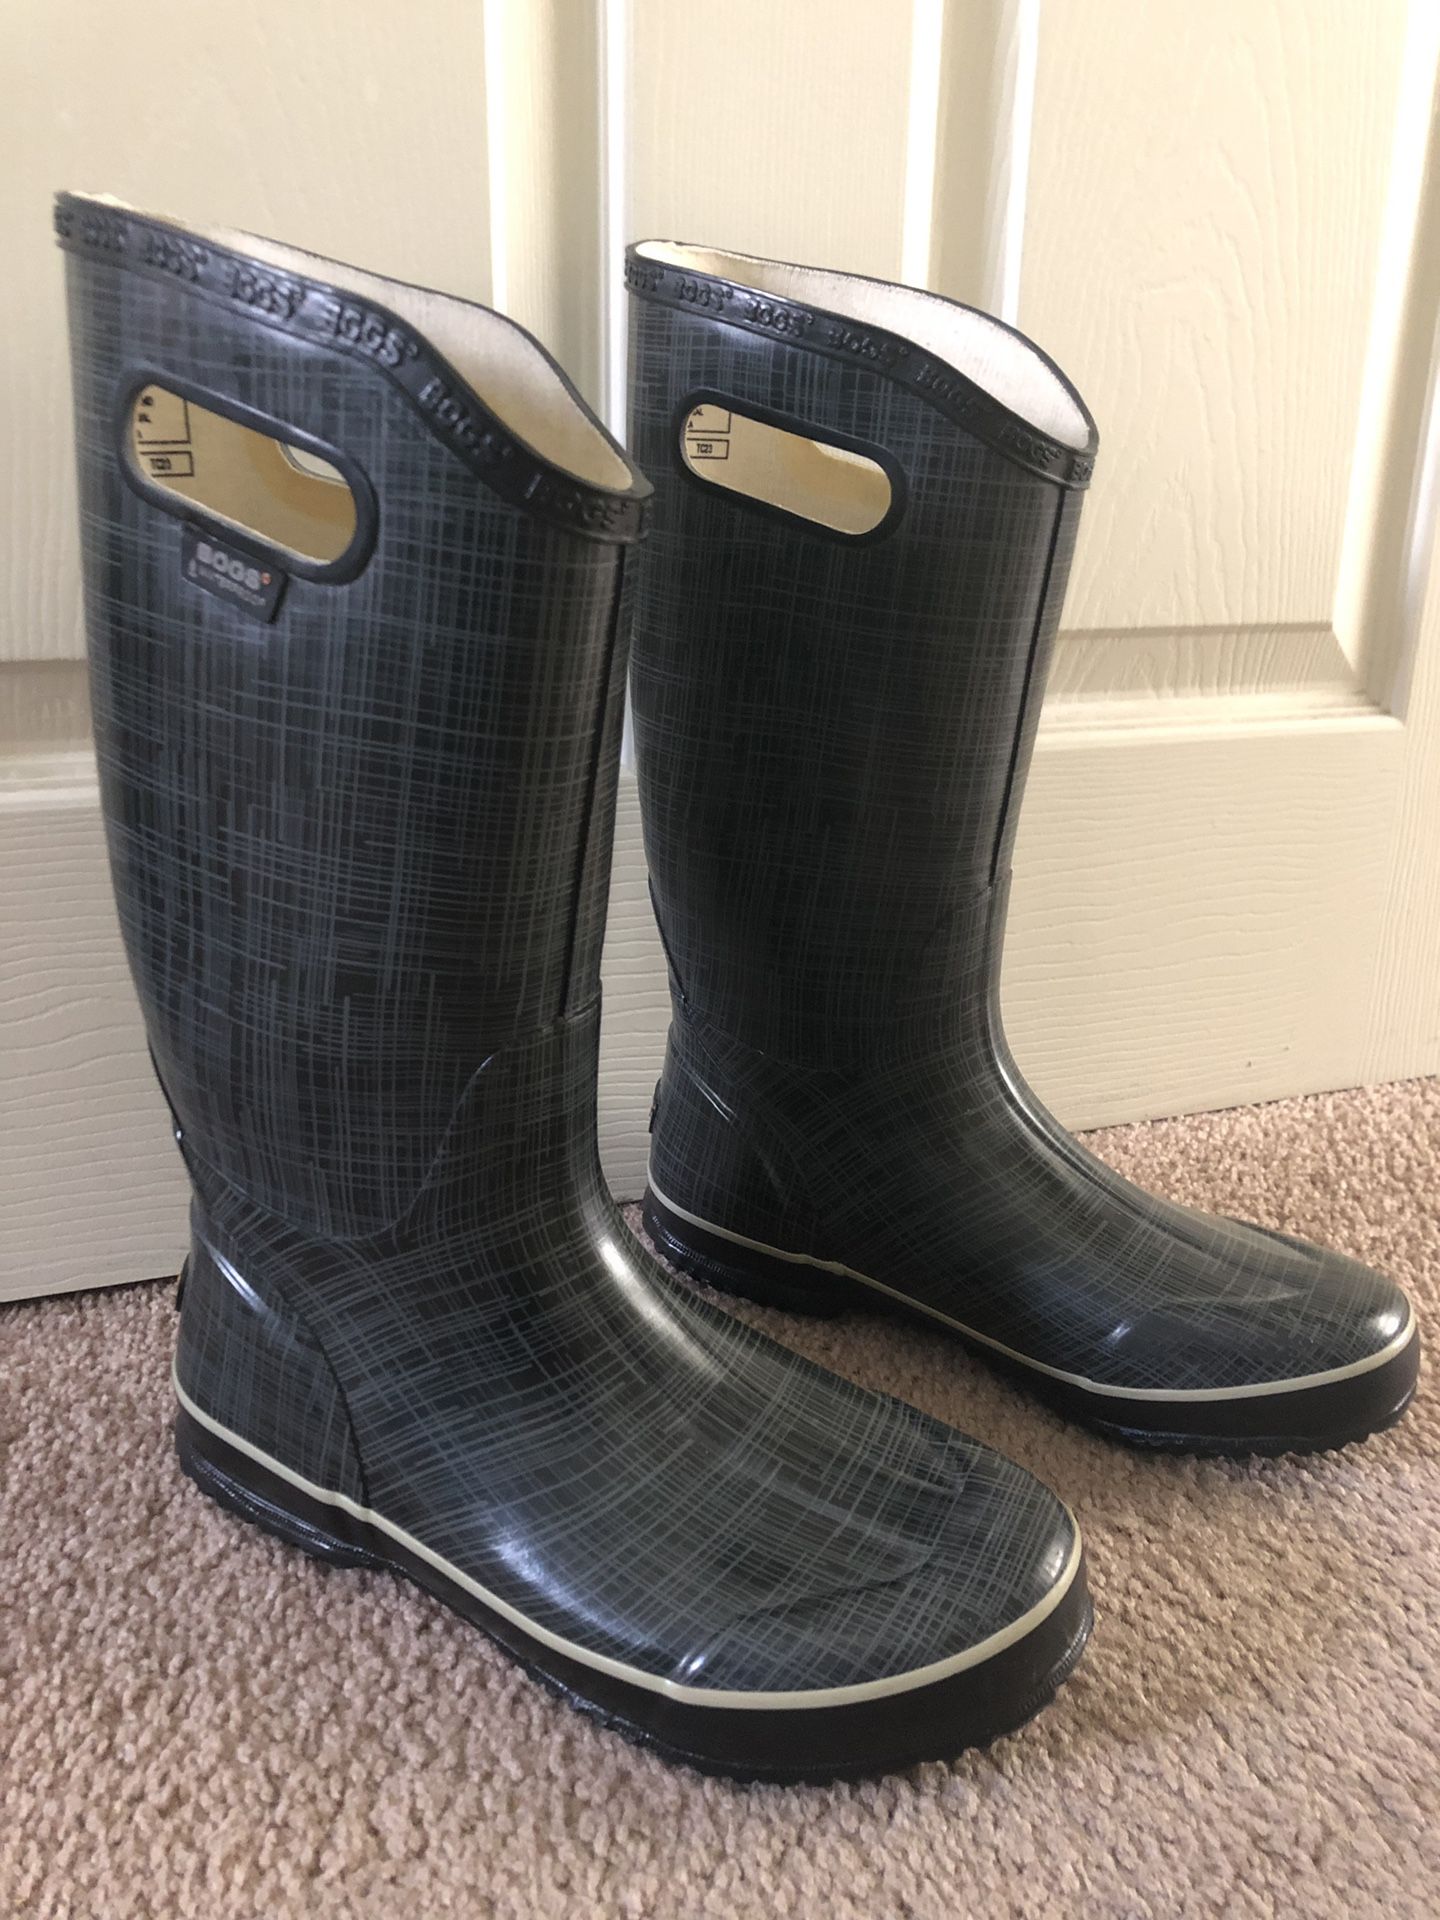 Bogs rain boots size 8